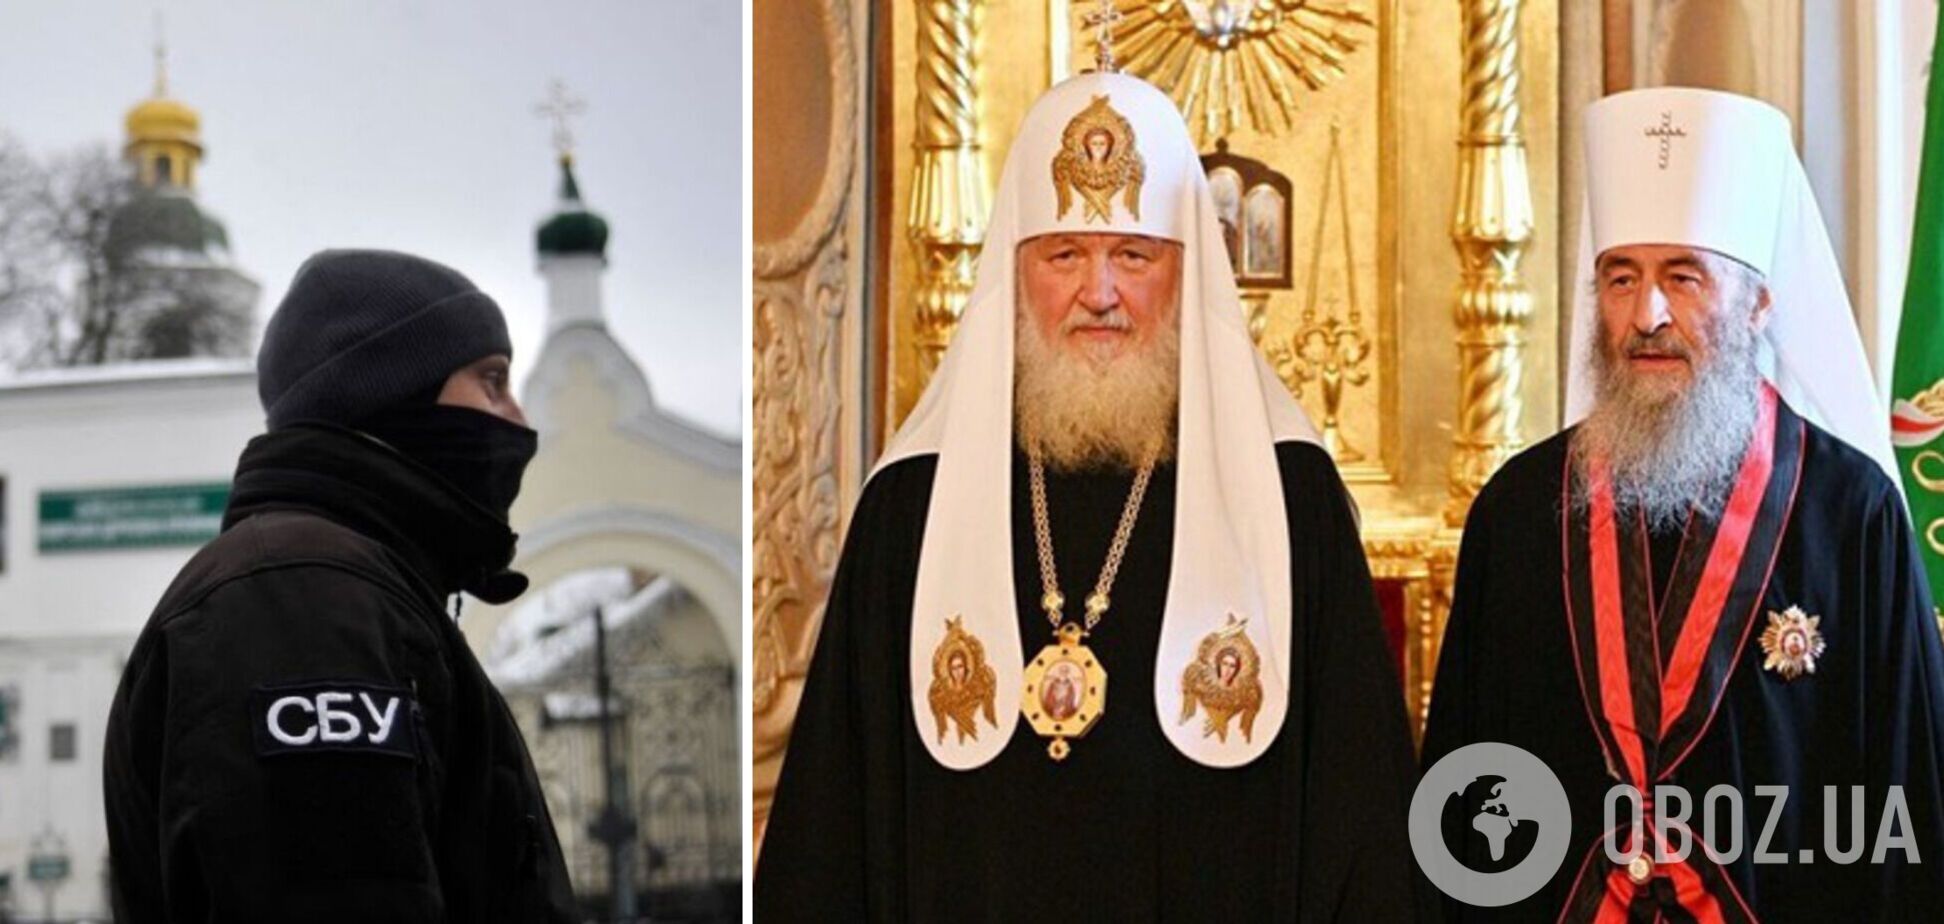 Ликвидировать УПЦ (МП) не менее сложно, чем содрать погоны ФСБ с духовенства российской церкви